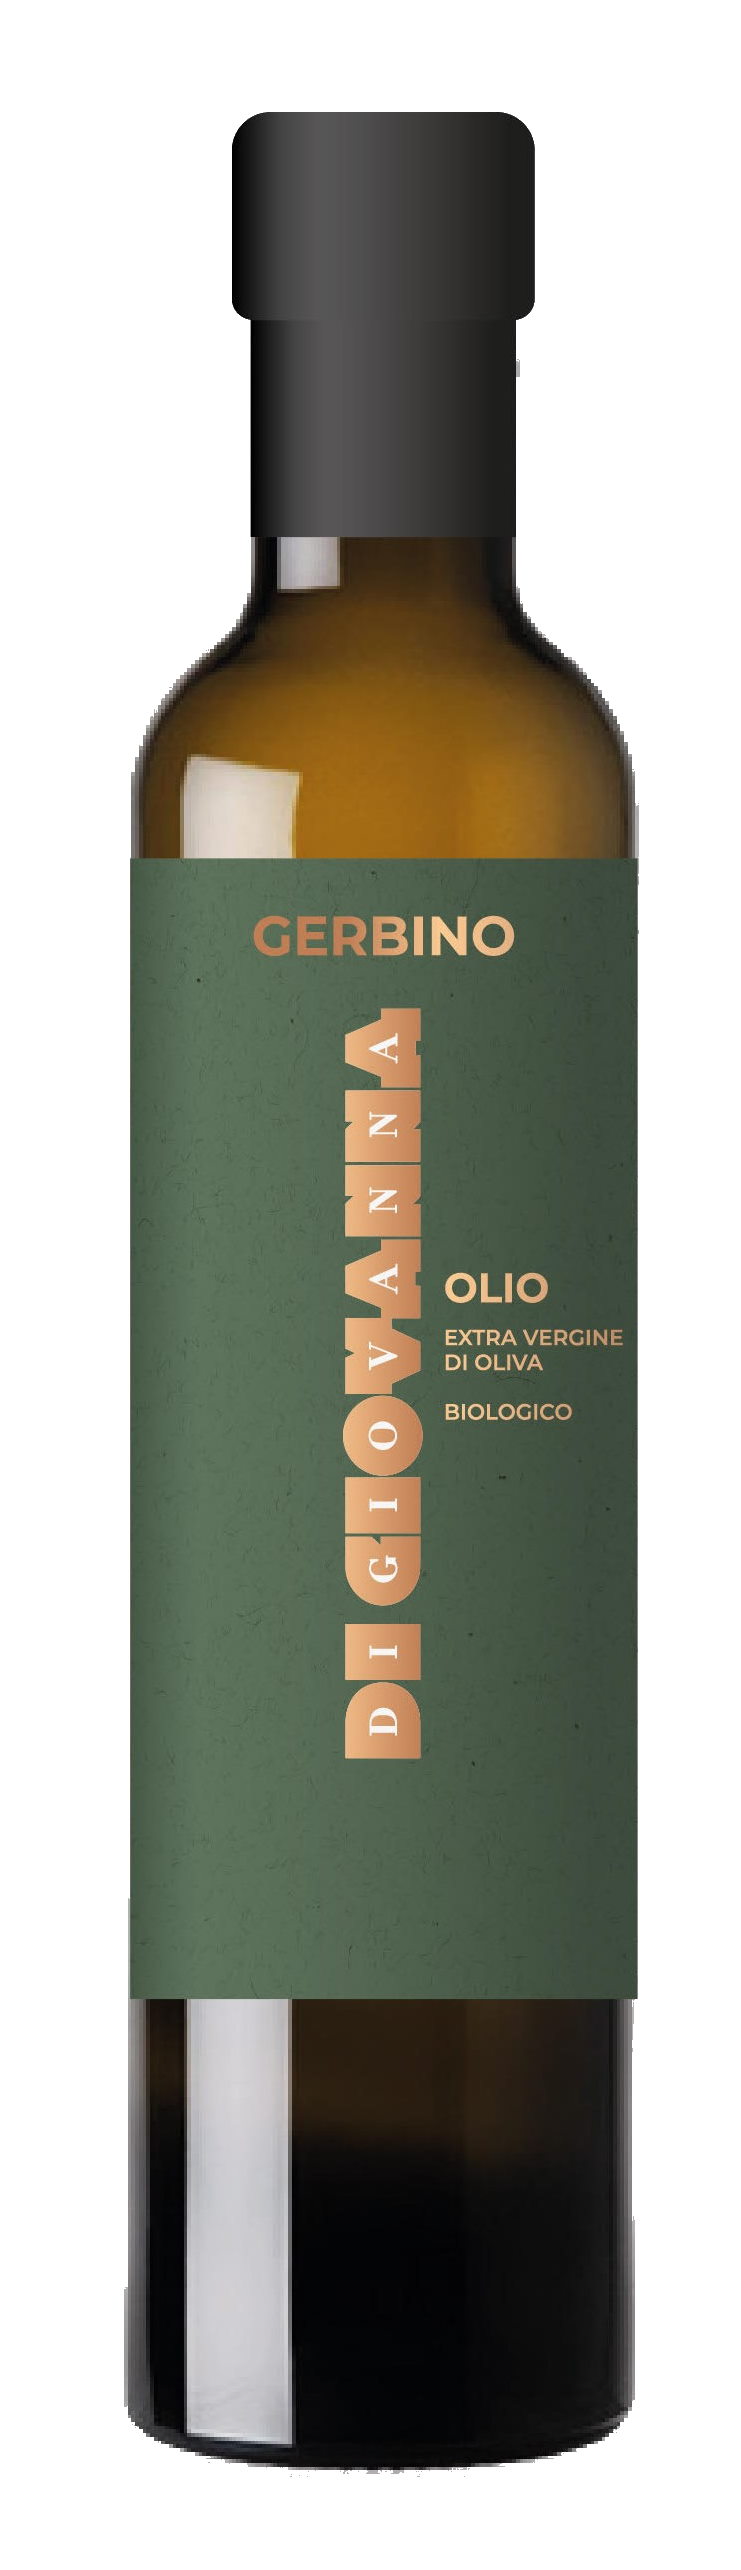 BIO Olio extra vergine di oliva Gerbino, Di Giovanna, Sizilien 0,75 l